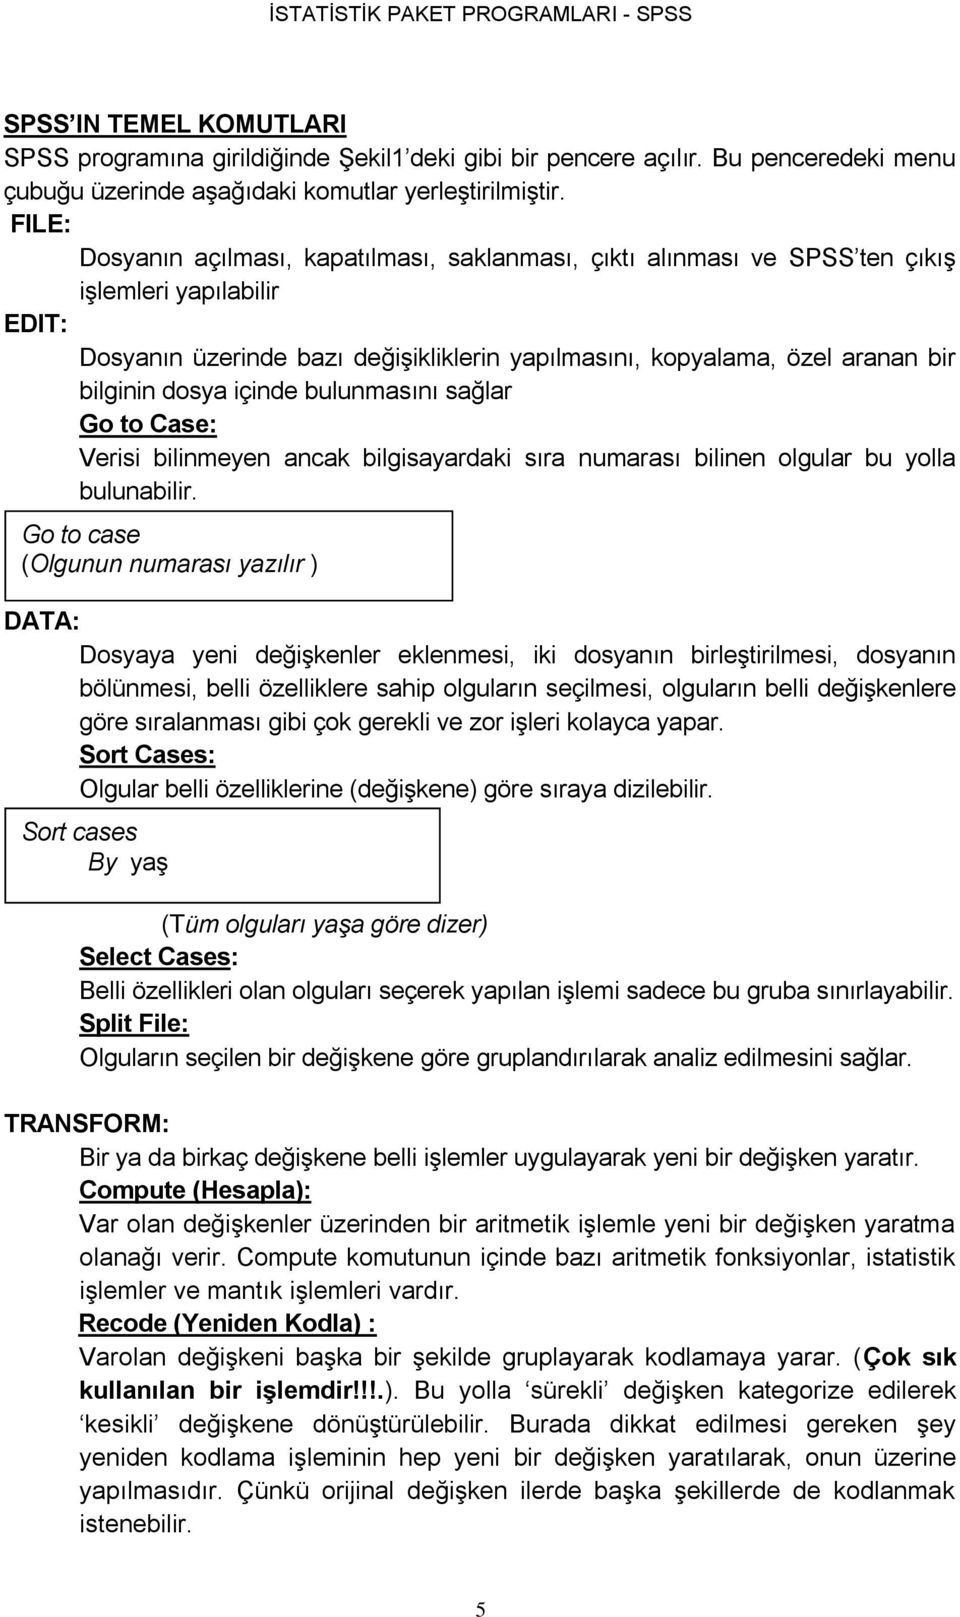 İSTATİSTİK PAKET PROGRAMLARI - SPSS - PDF Ücretsiz indirin